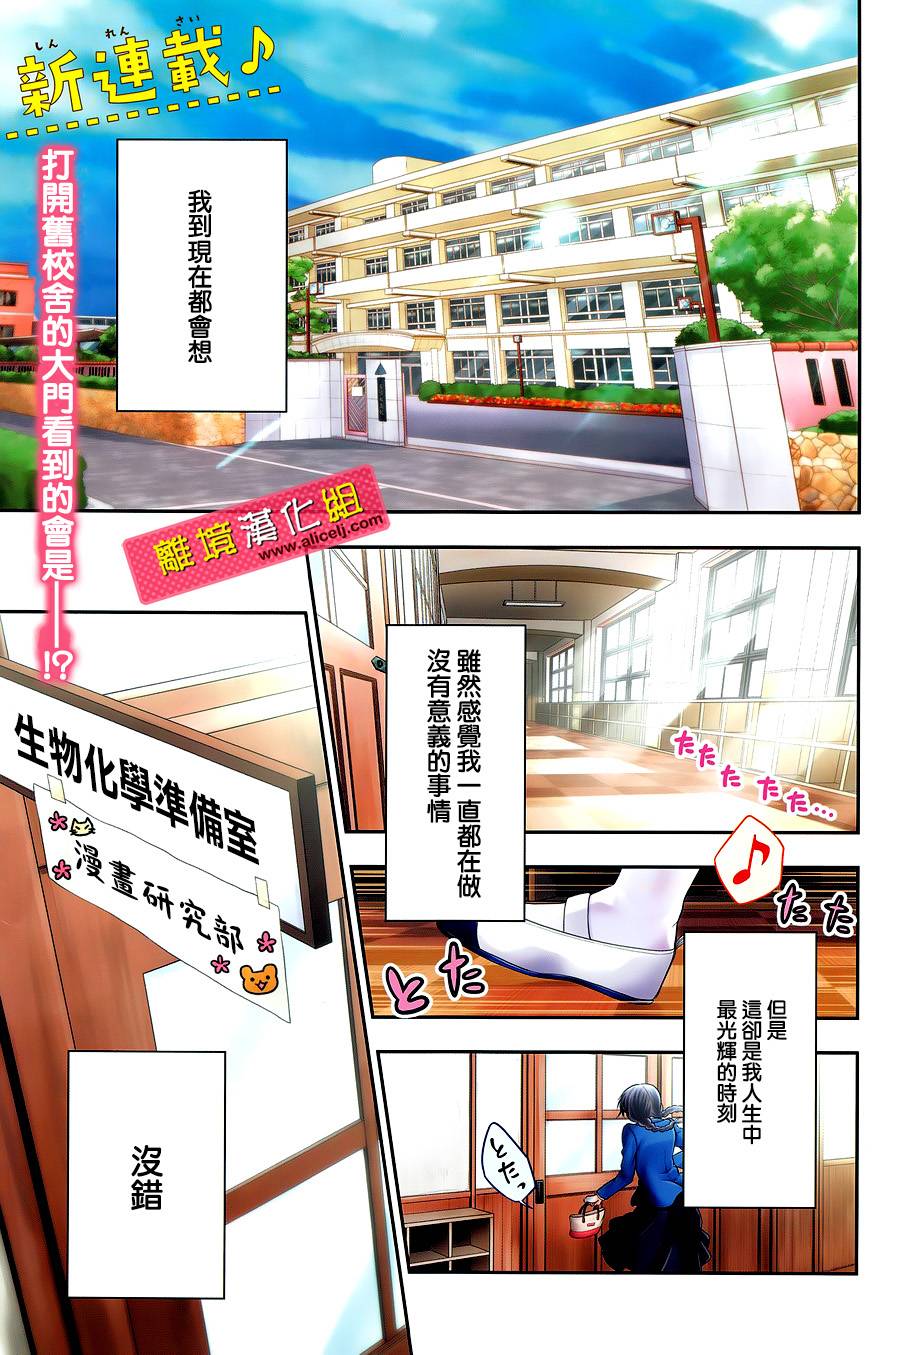 春日坂高校漫畫研究部 第01話 漫畫線上看 動漫戲說 Acgn Cc